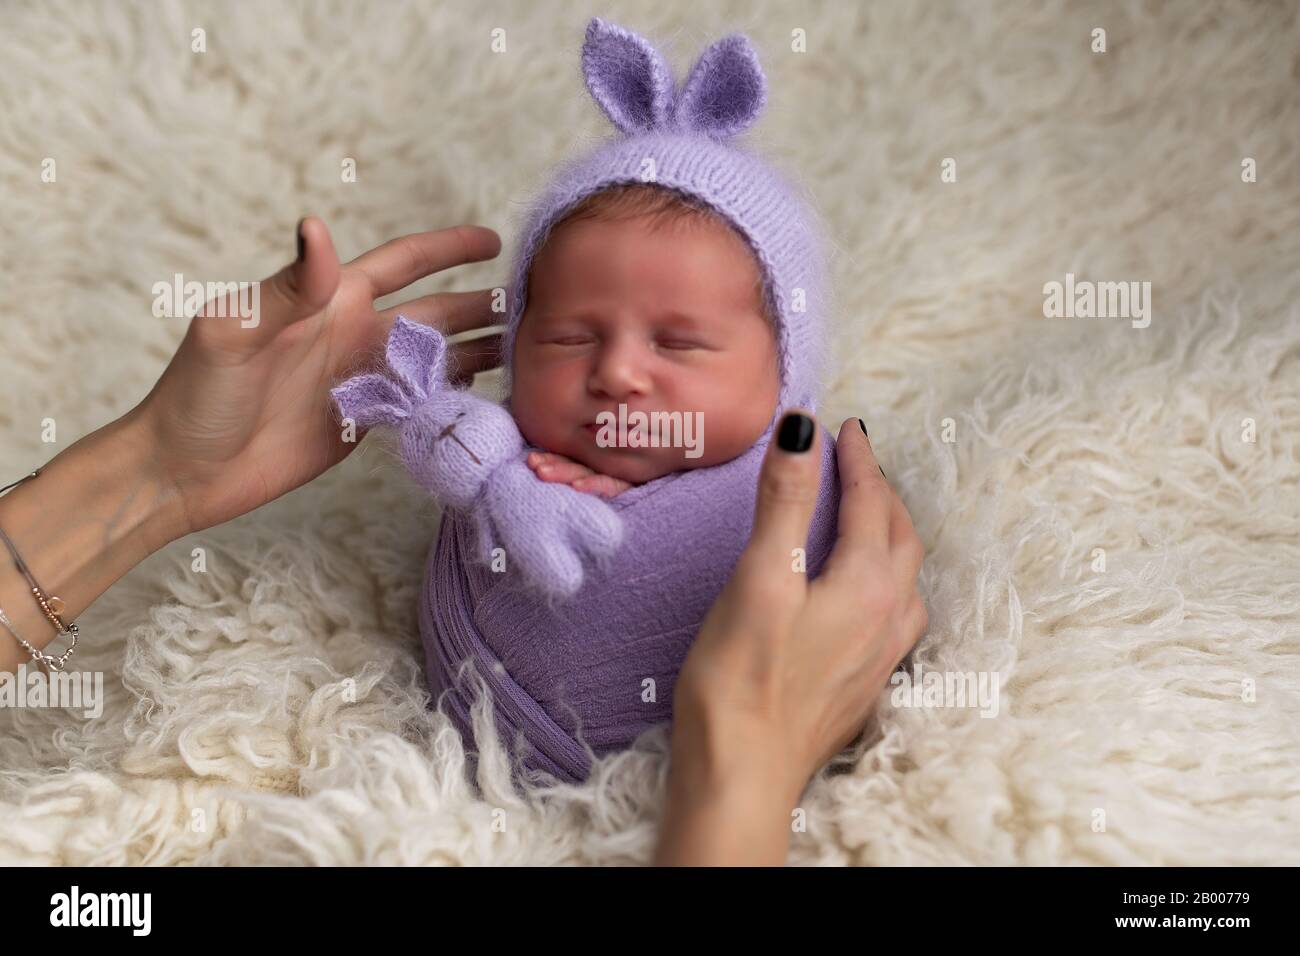 Femme mains s'occuper d'un bébé nouveau-né. Photographe et son enfant. Concept pour la prise de vue de bébé, la famille, les soins et la naissance Banque D'Images